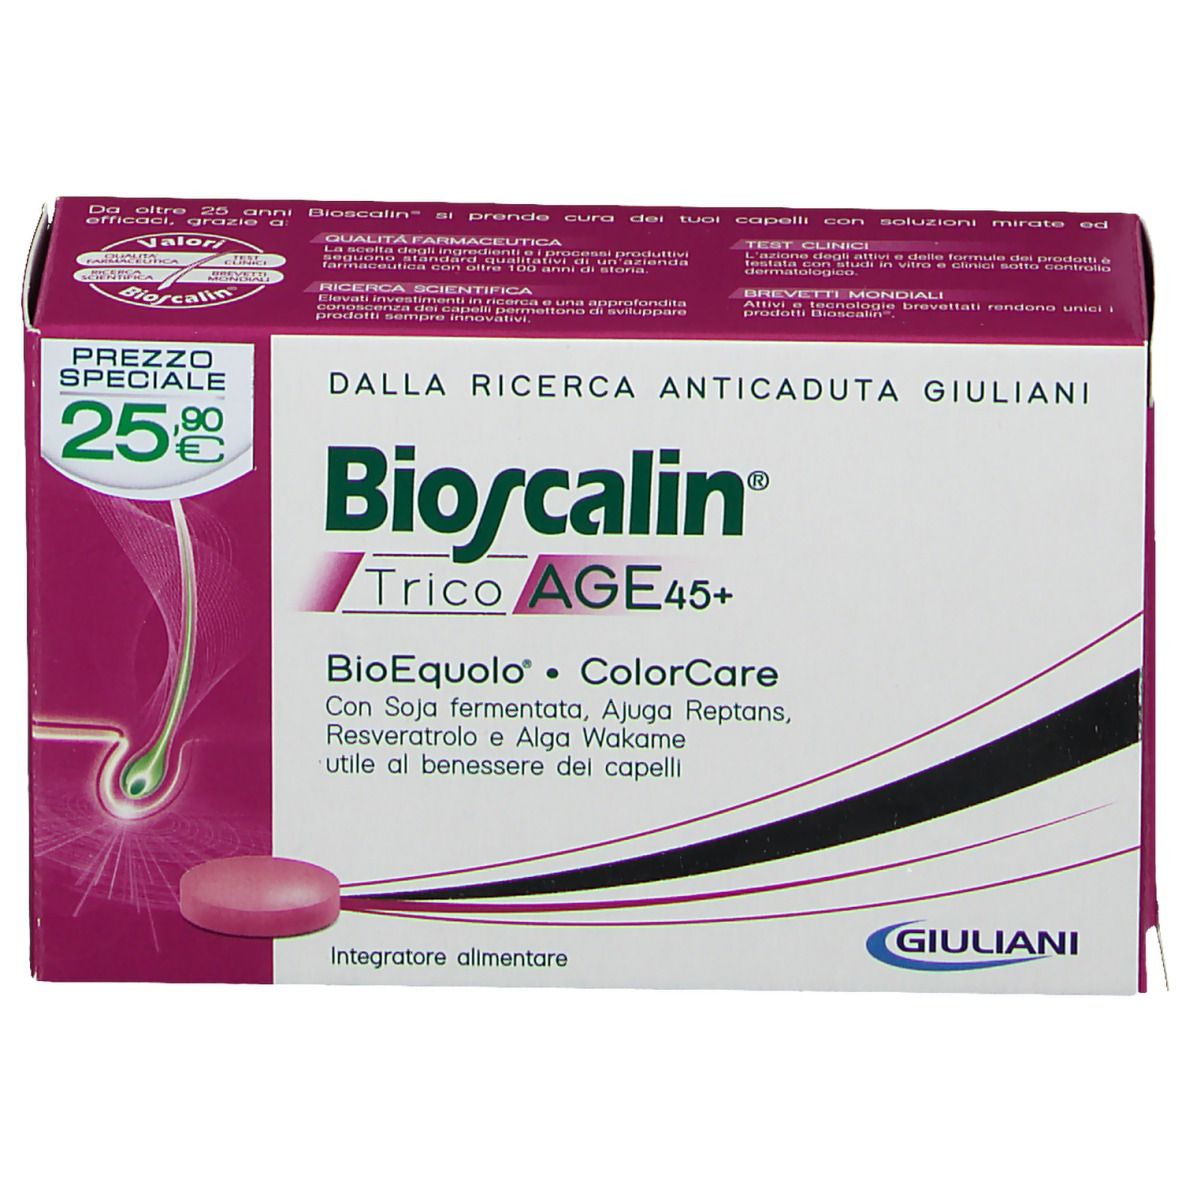 Image of Bioscalin Tricoage 45+ Giuliani 30 Compresse Prezzo Speciale